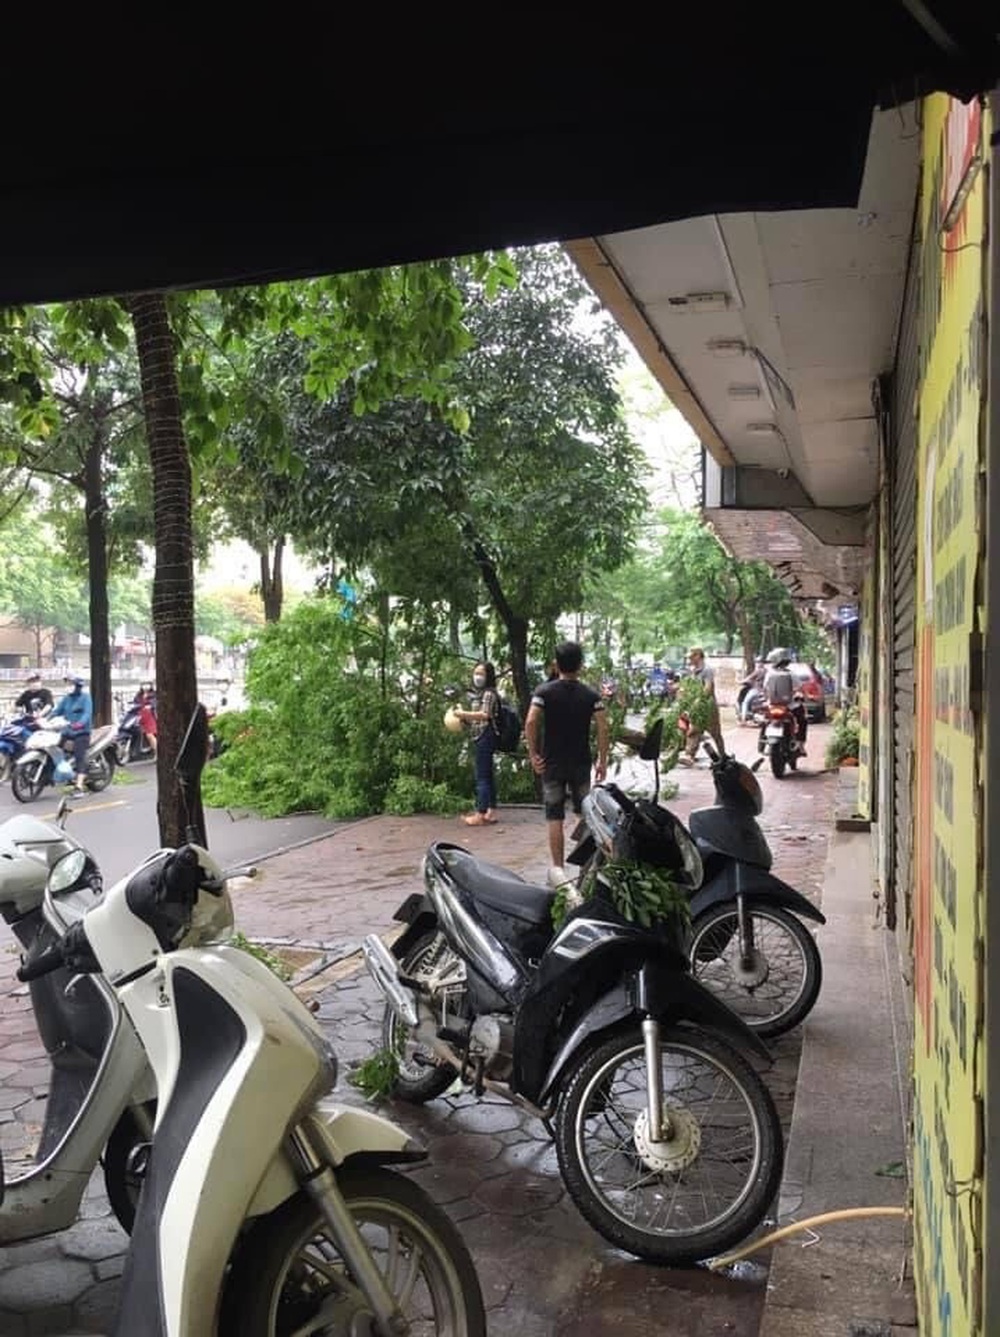 Hú hồn cây xanh trên đường Hà Nội bỗng nhiên bật gốc đổ đè vào 3 người đi xe máy - Ảnh 2.